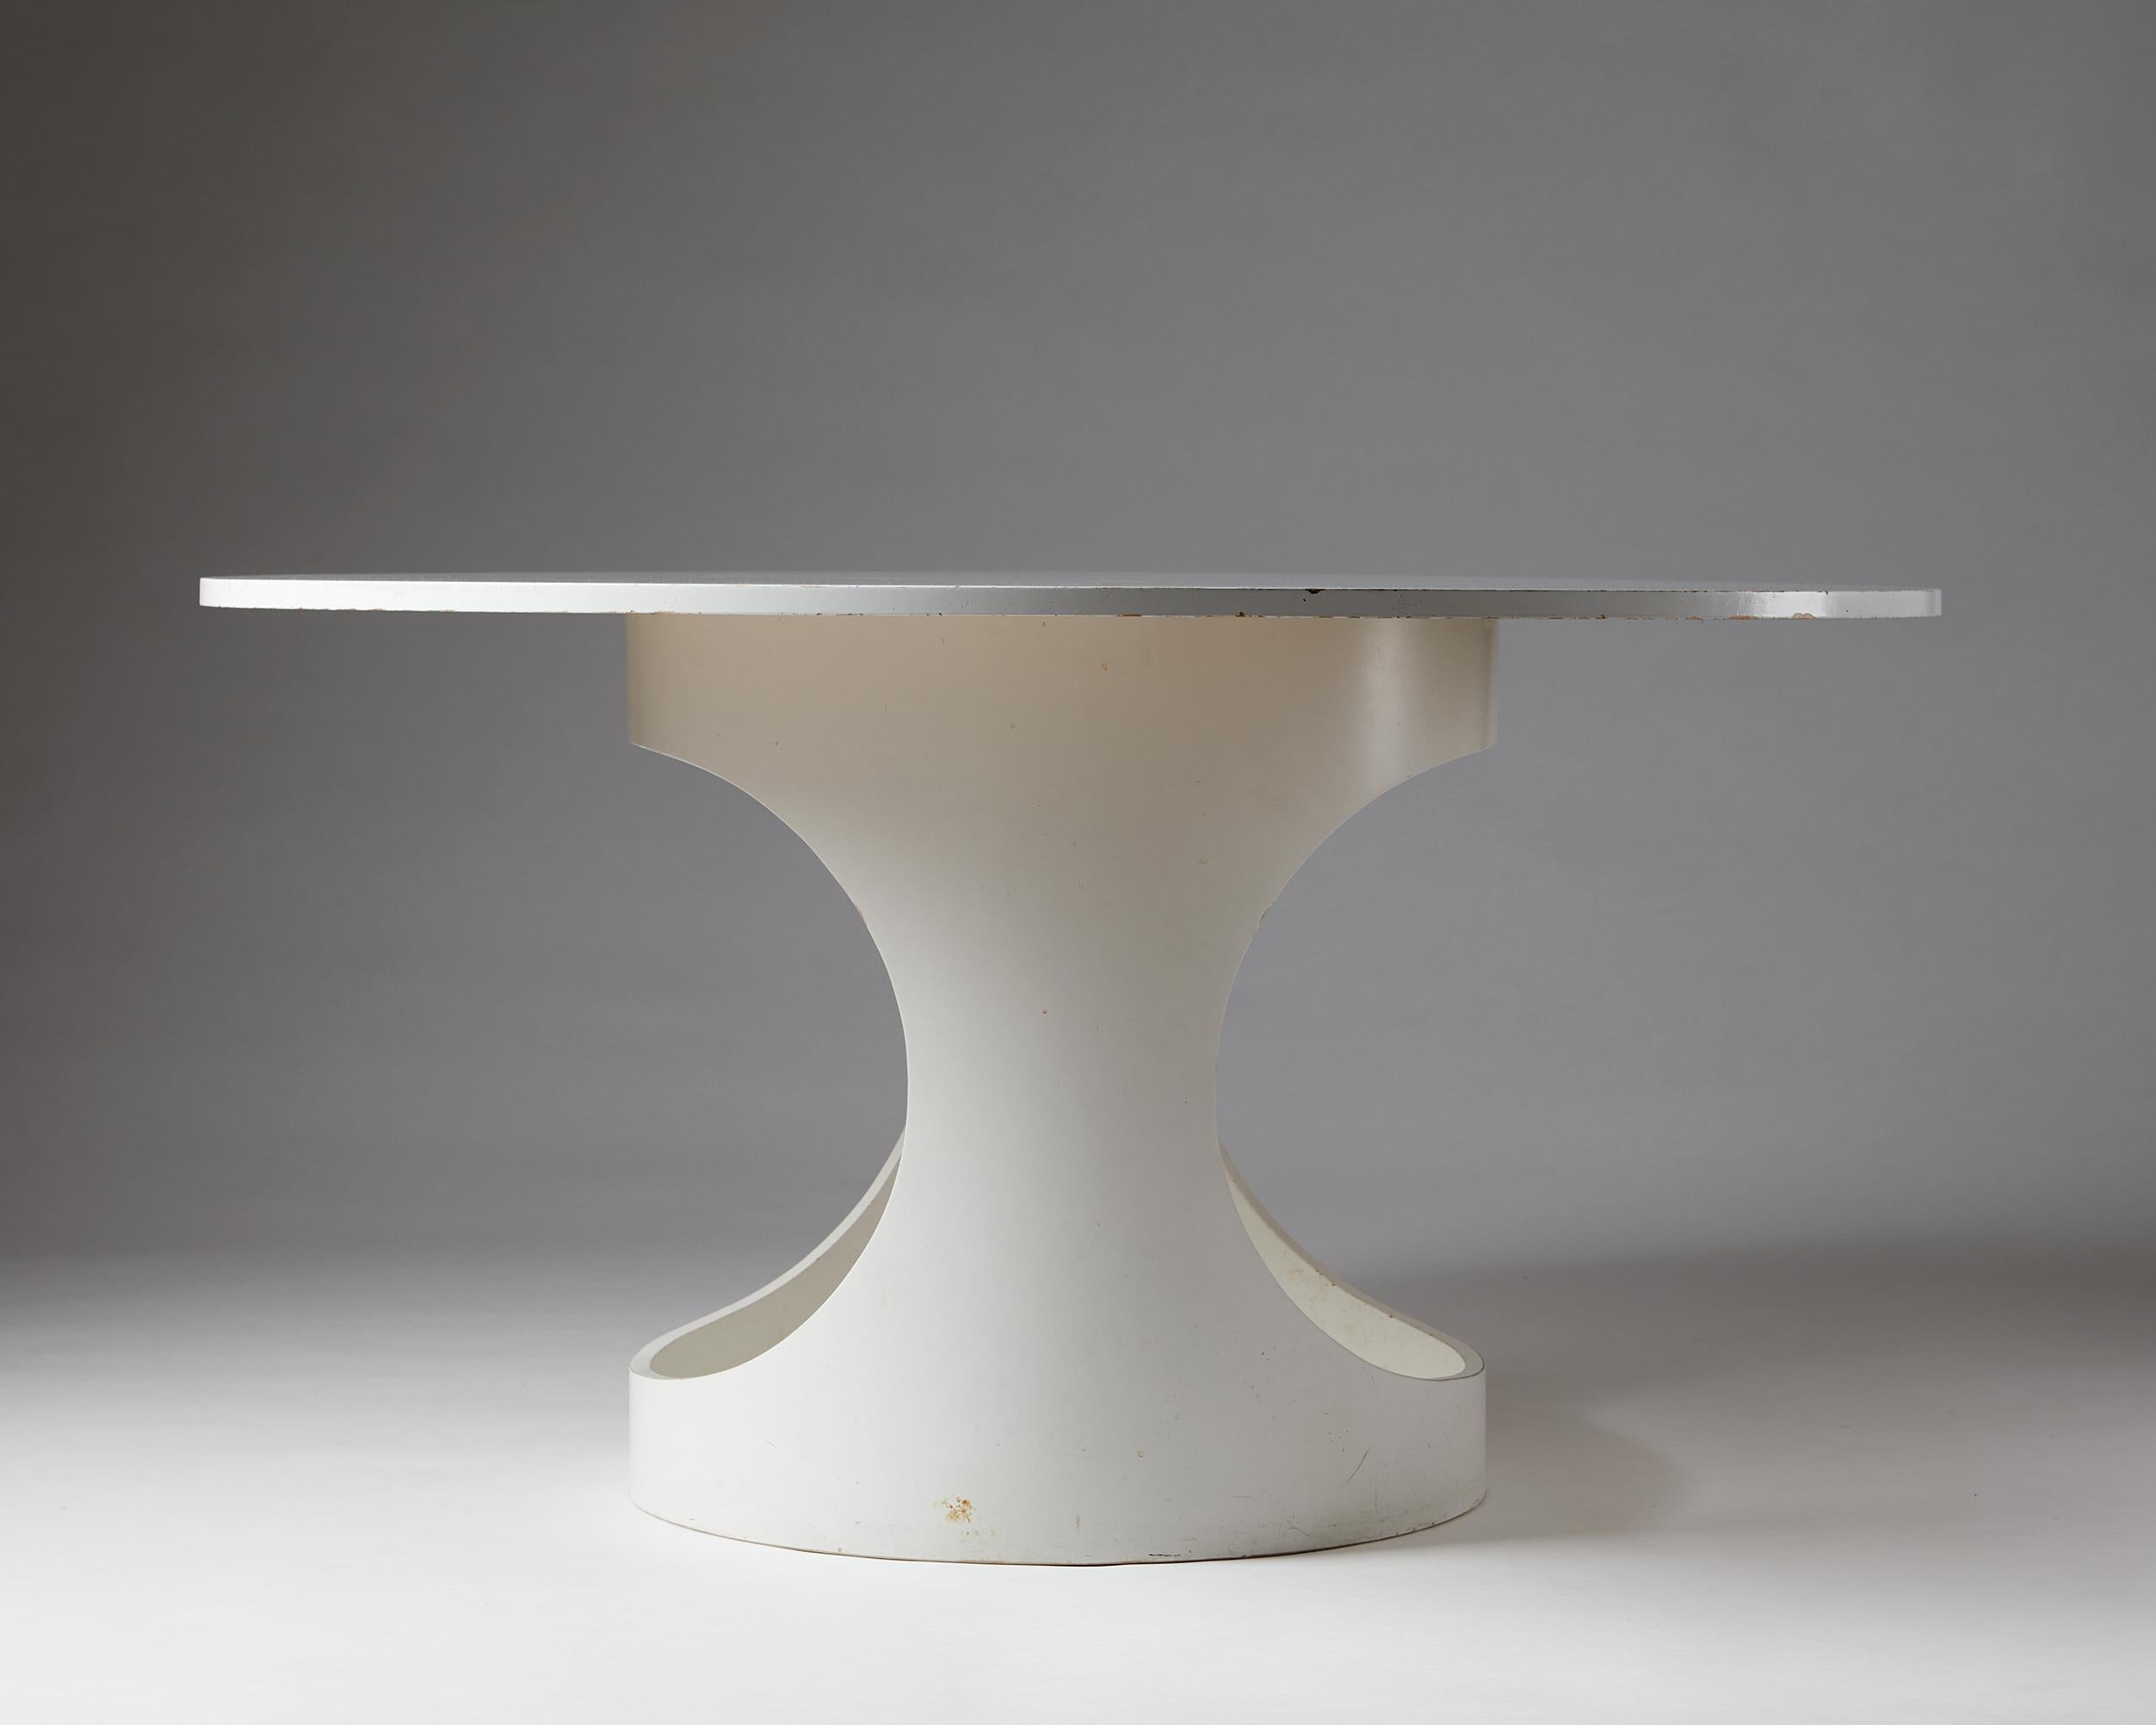 Scandinavian Modern Dining Table, “Pre Pop” Designed by Arne Jacobsen, Denmark, 1960s